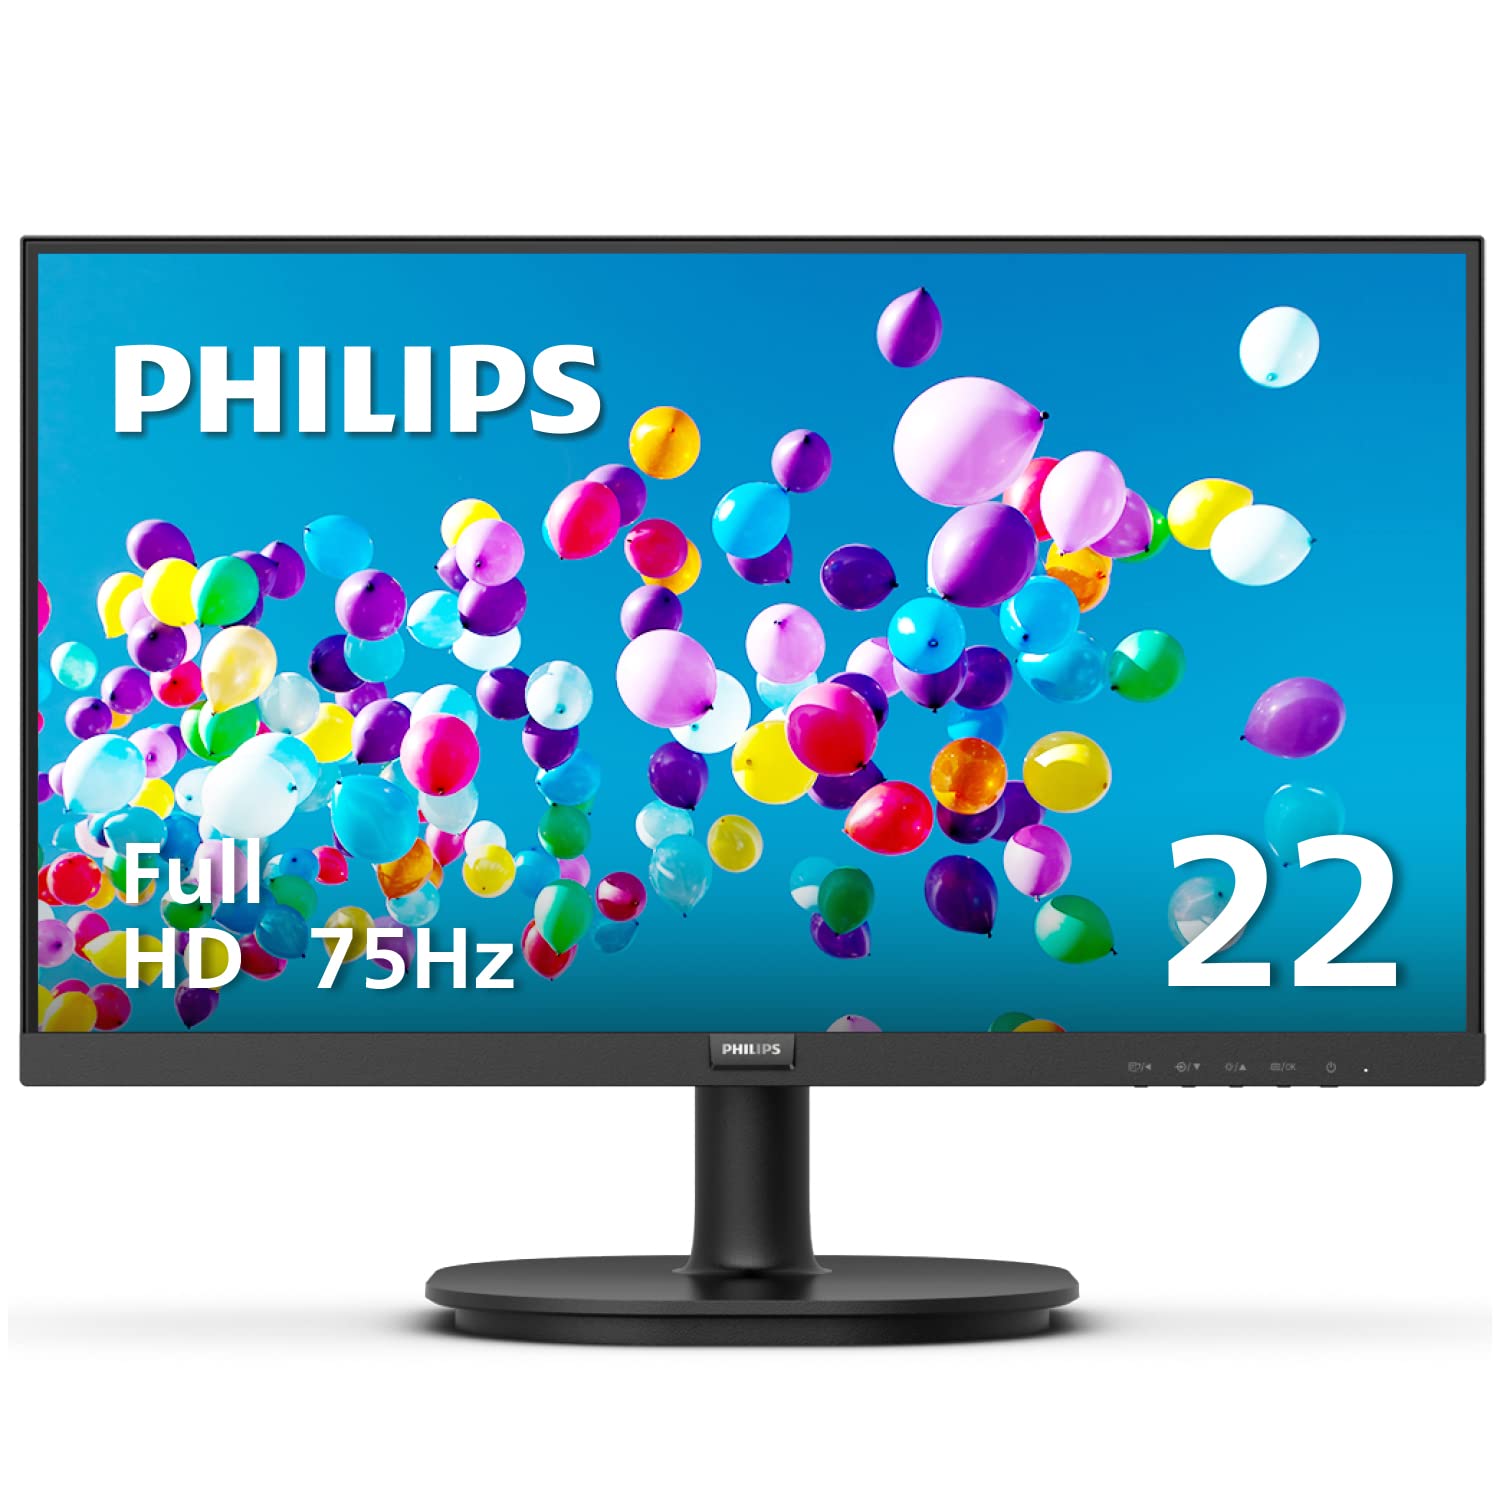 PHILIPS Monitores de computadora 22 pulgadas clase delgada Full HD (1920 x 1080) 75Hz Monitor, VESA, puerto HDMI y VGA, garantía de reemplazo de 4 años por adelantado, 221V8LN